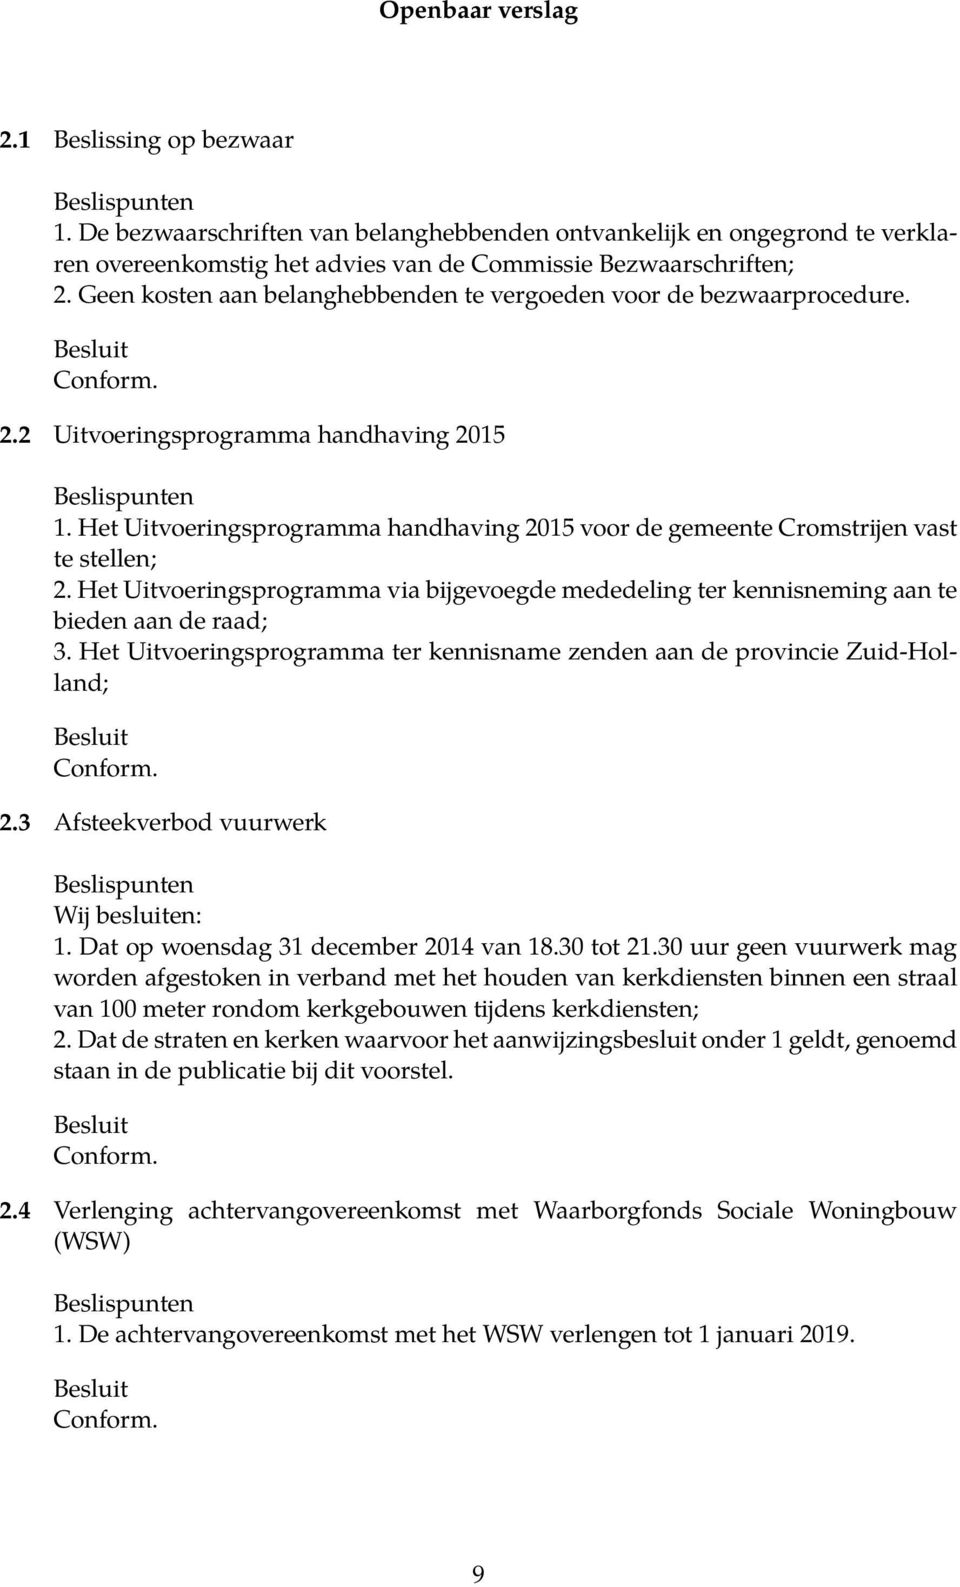 Het Uitvoeringsprogramma handhaving 2015 voor de gemeente Cromstrijen vast te stellen; 2. Het Uitvoeringsprogramma via bijgevoegde mededeling ter kennisneming aan te bieden aan de raad; 3.